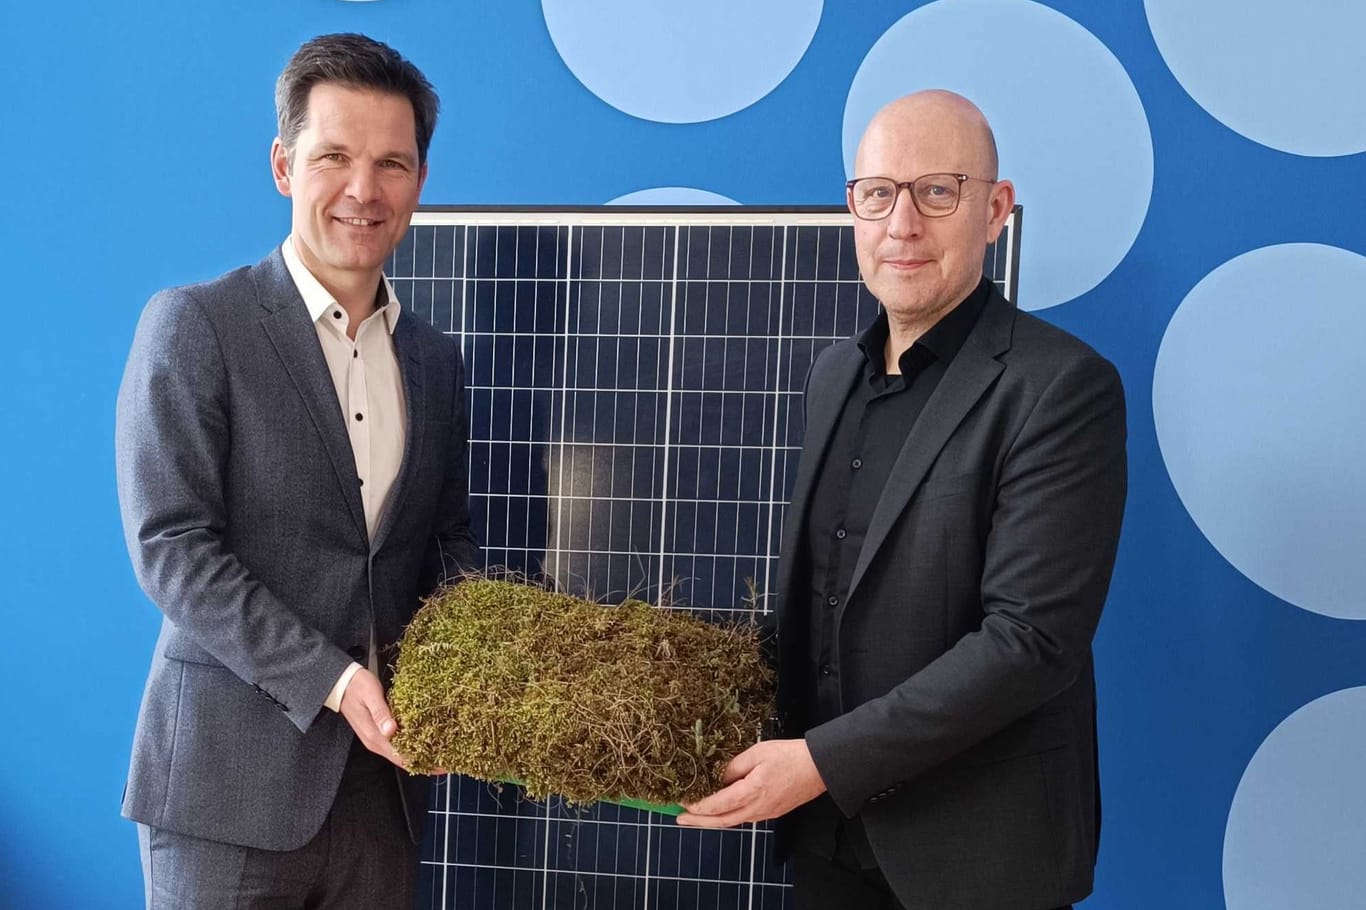 Hannovers Regionspräsident Steffen Krach (l.) und Umweltdezernent Jens Palandt: Die Region Hannover will Vorreiter in Sachen Klimaschutz werden.